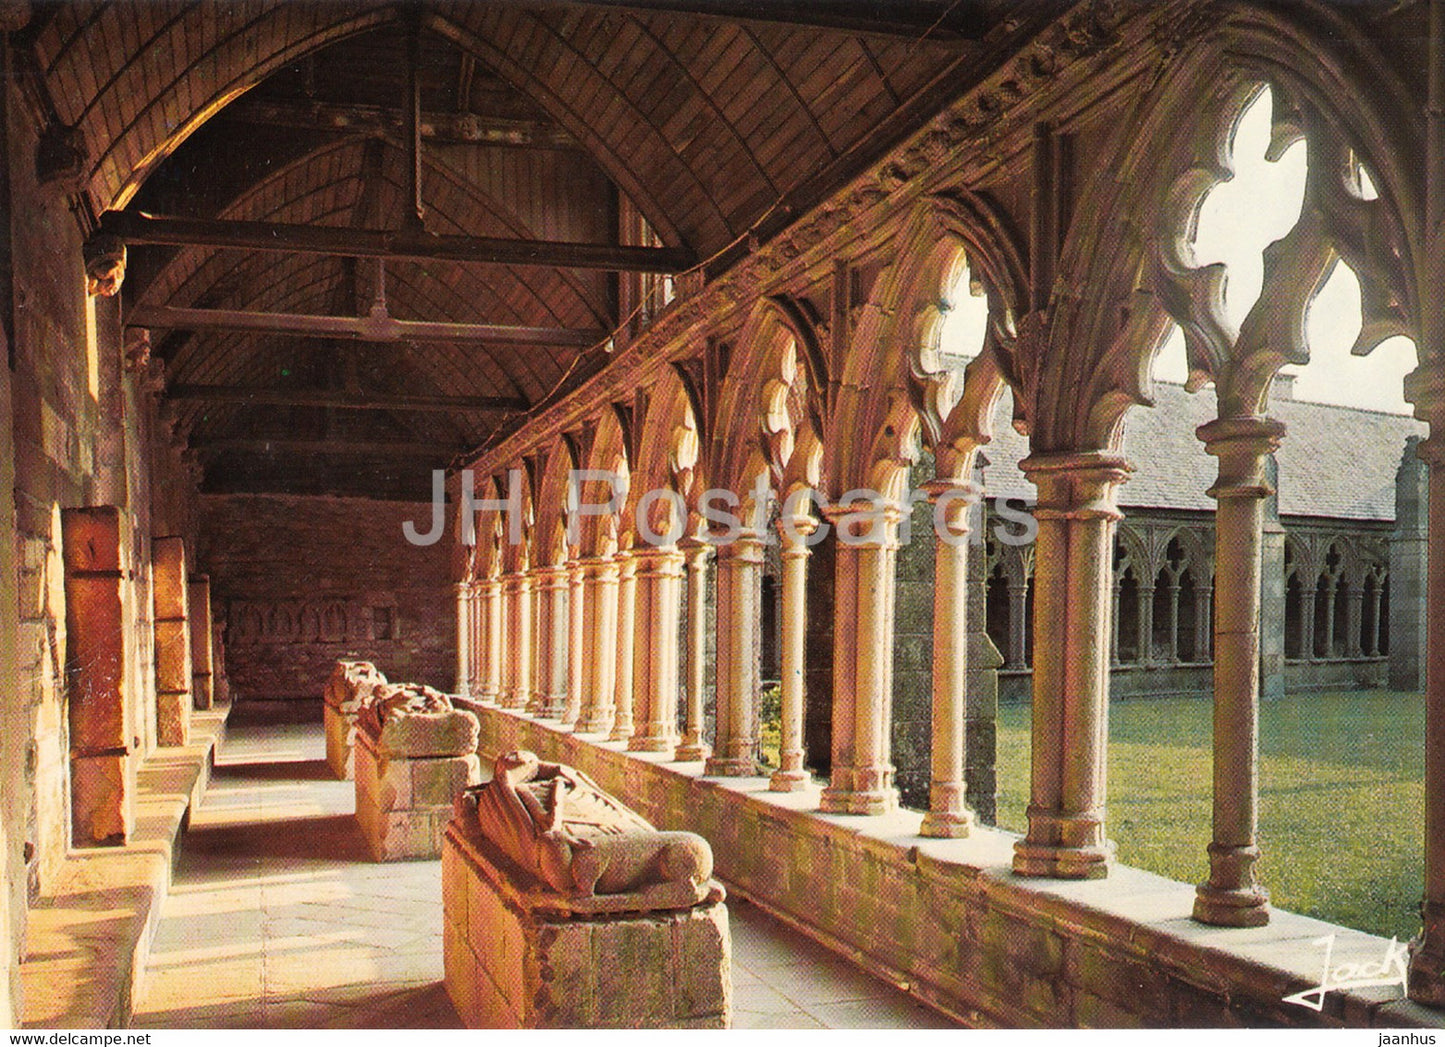 Treguier - L'interieur du cloitre - inside of the cloister - 22220 - France - unused - JH Postcards